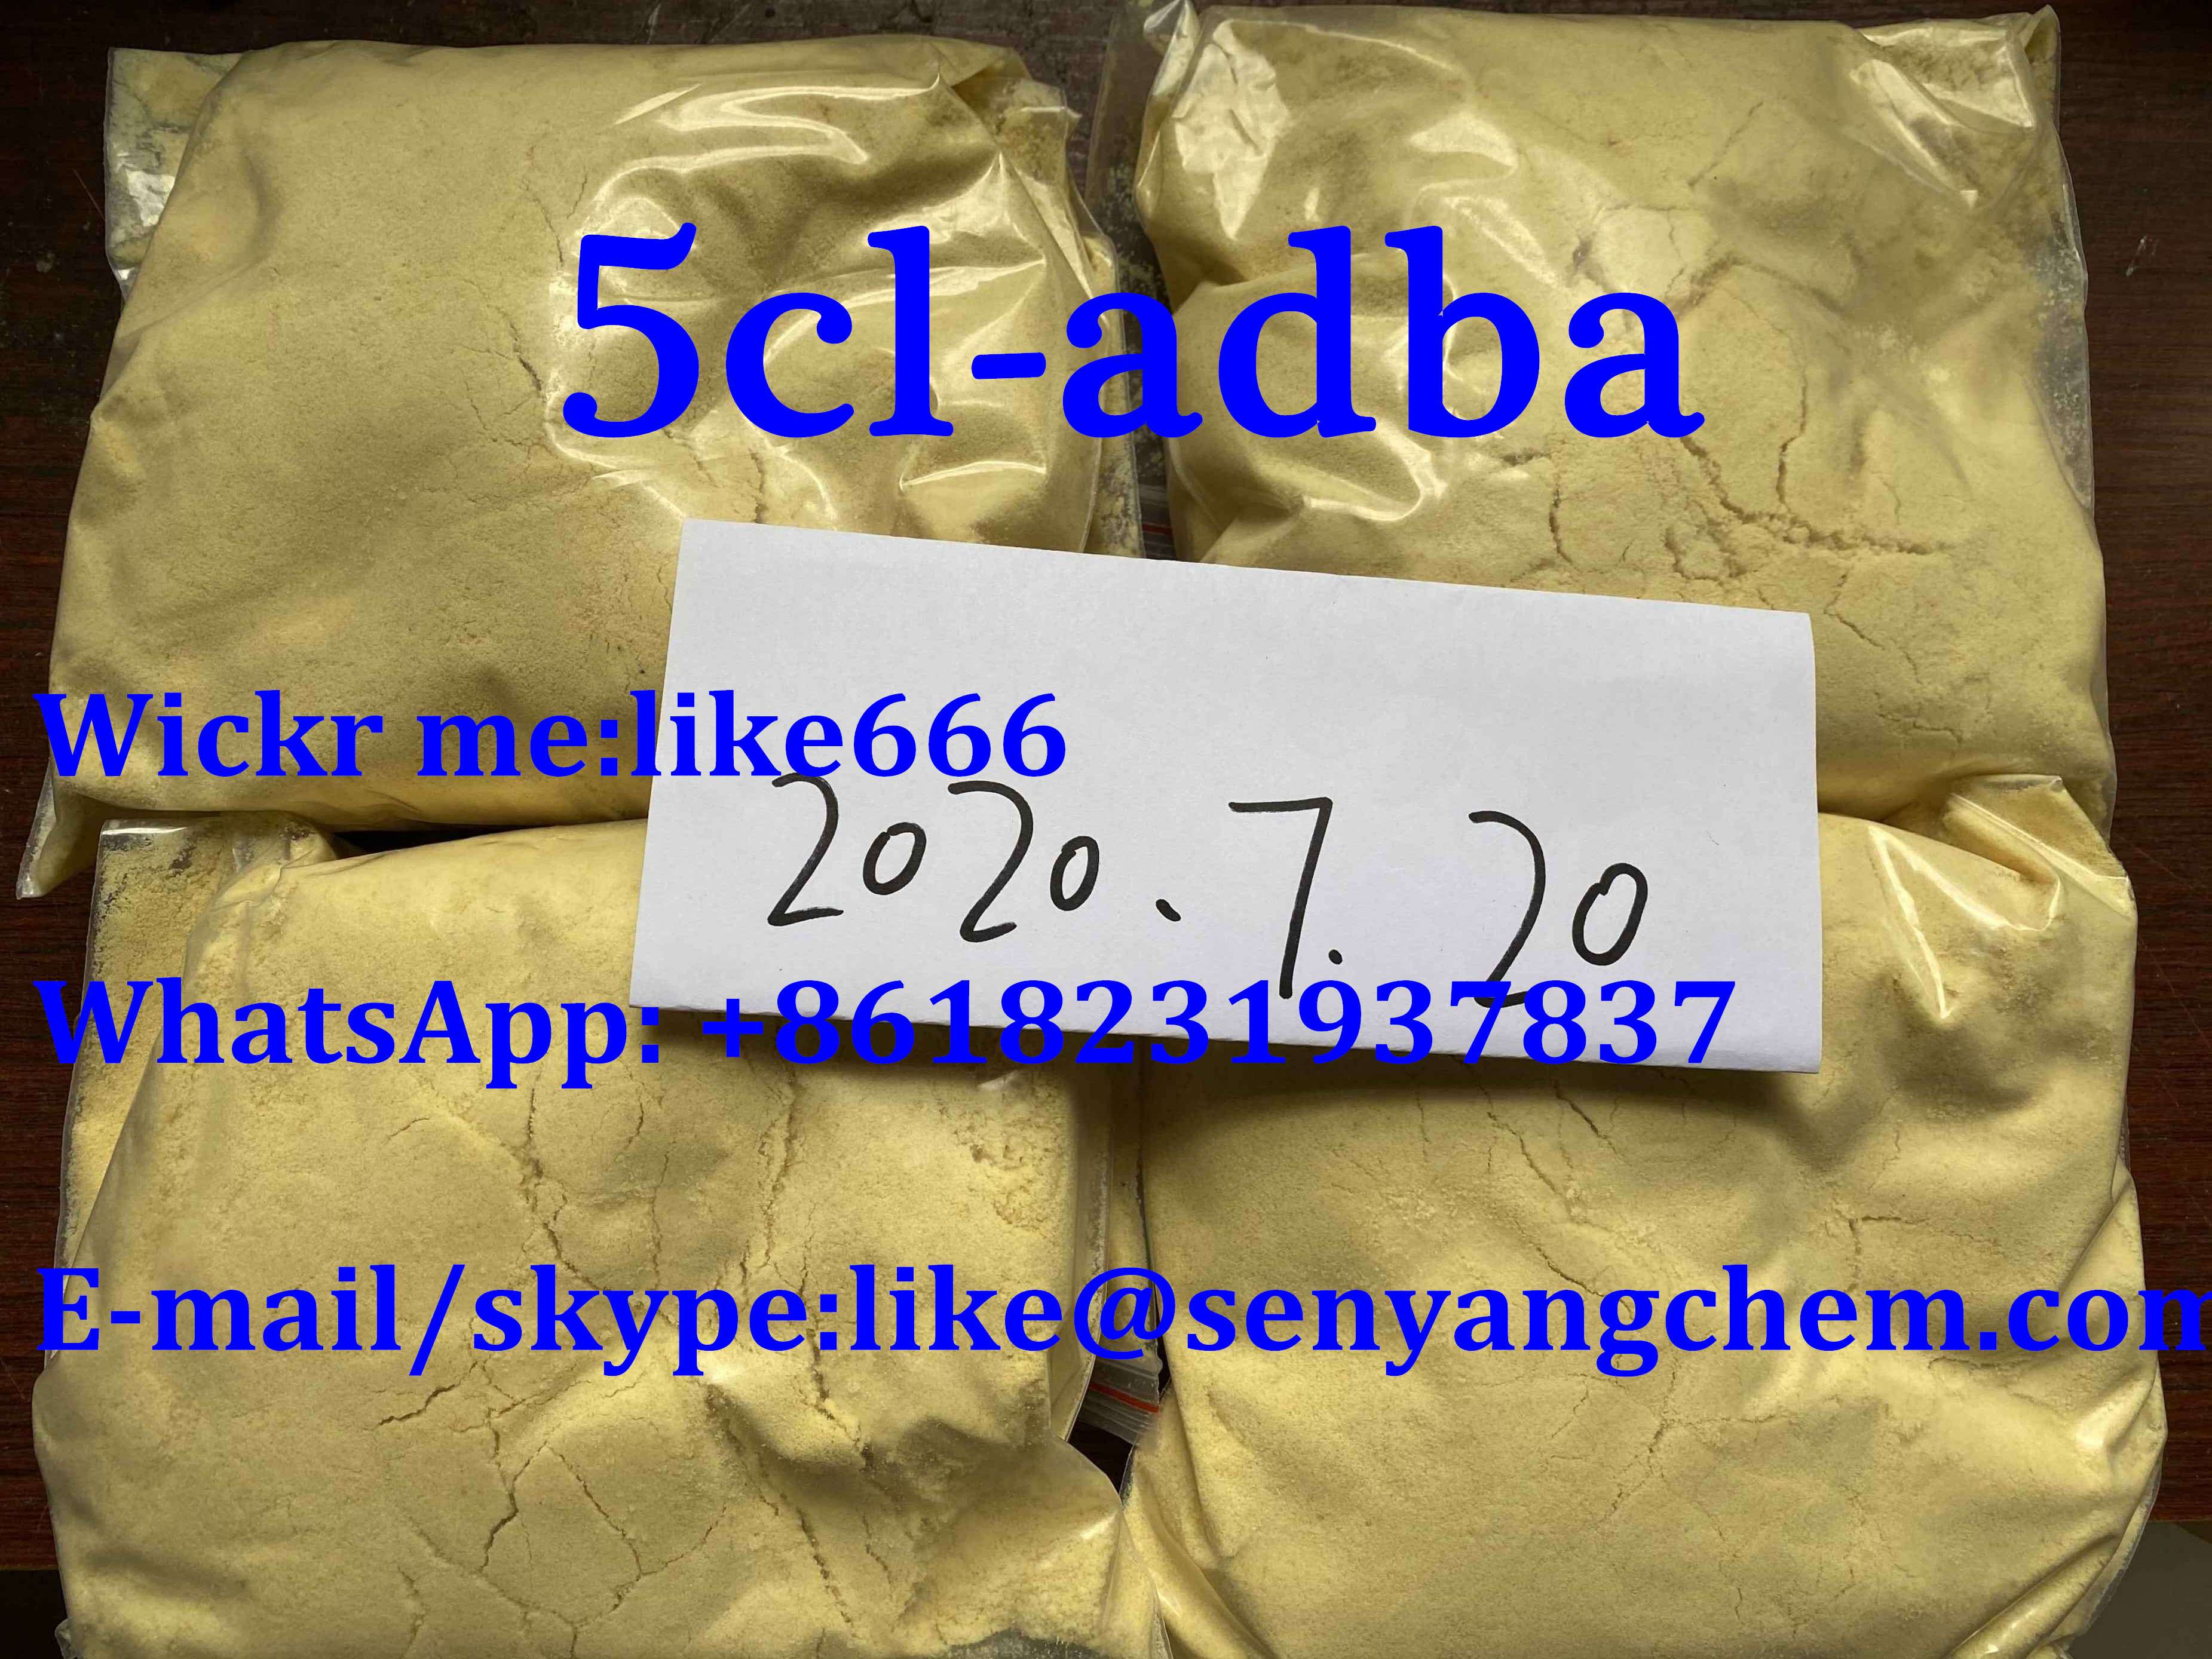 5cl-adba powder crystal WhatsApp: +8618231937837